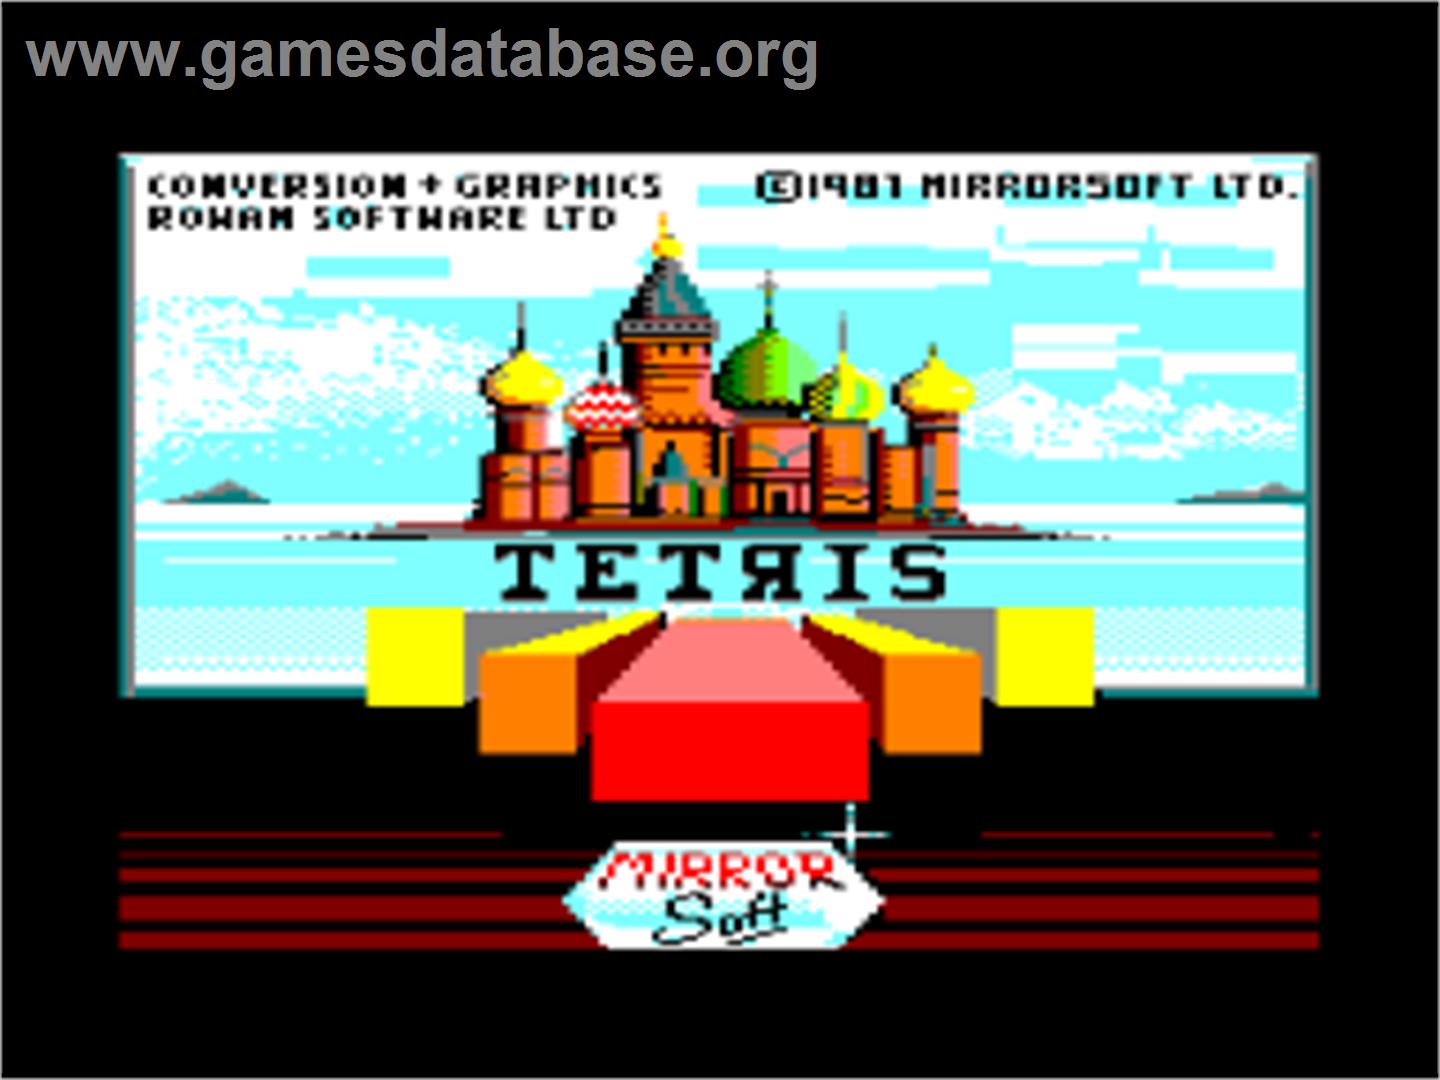 Artist - Amstrad CPC - Artwork - Title Screen